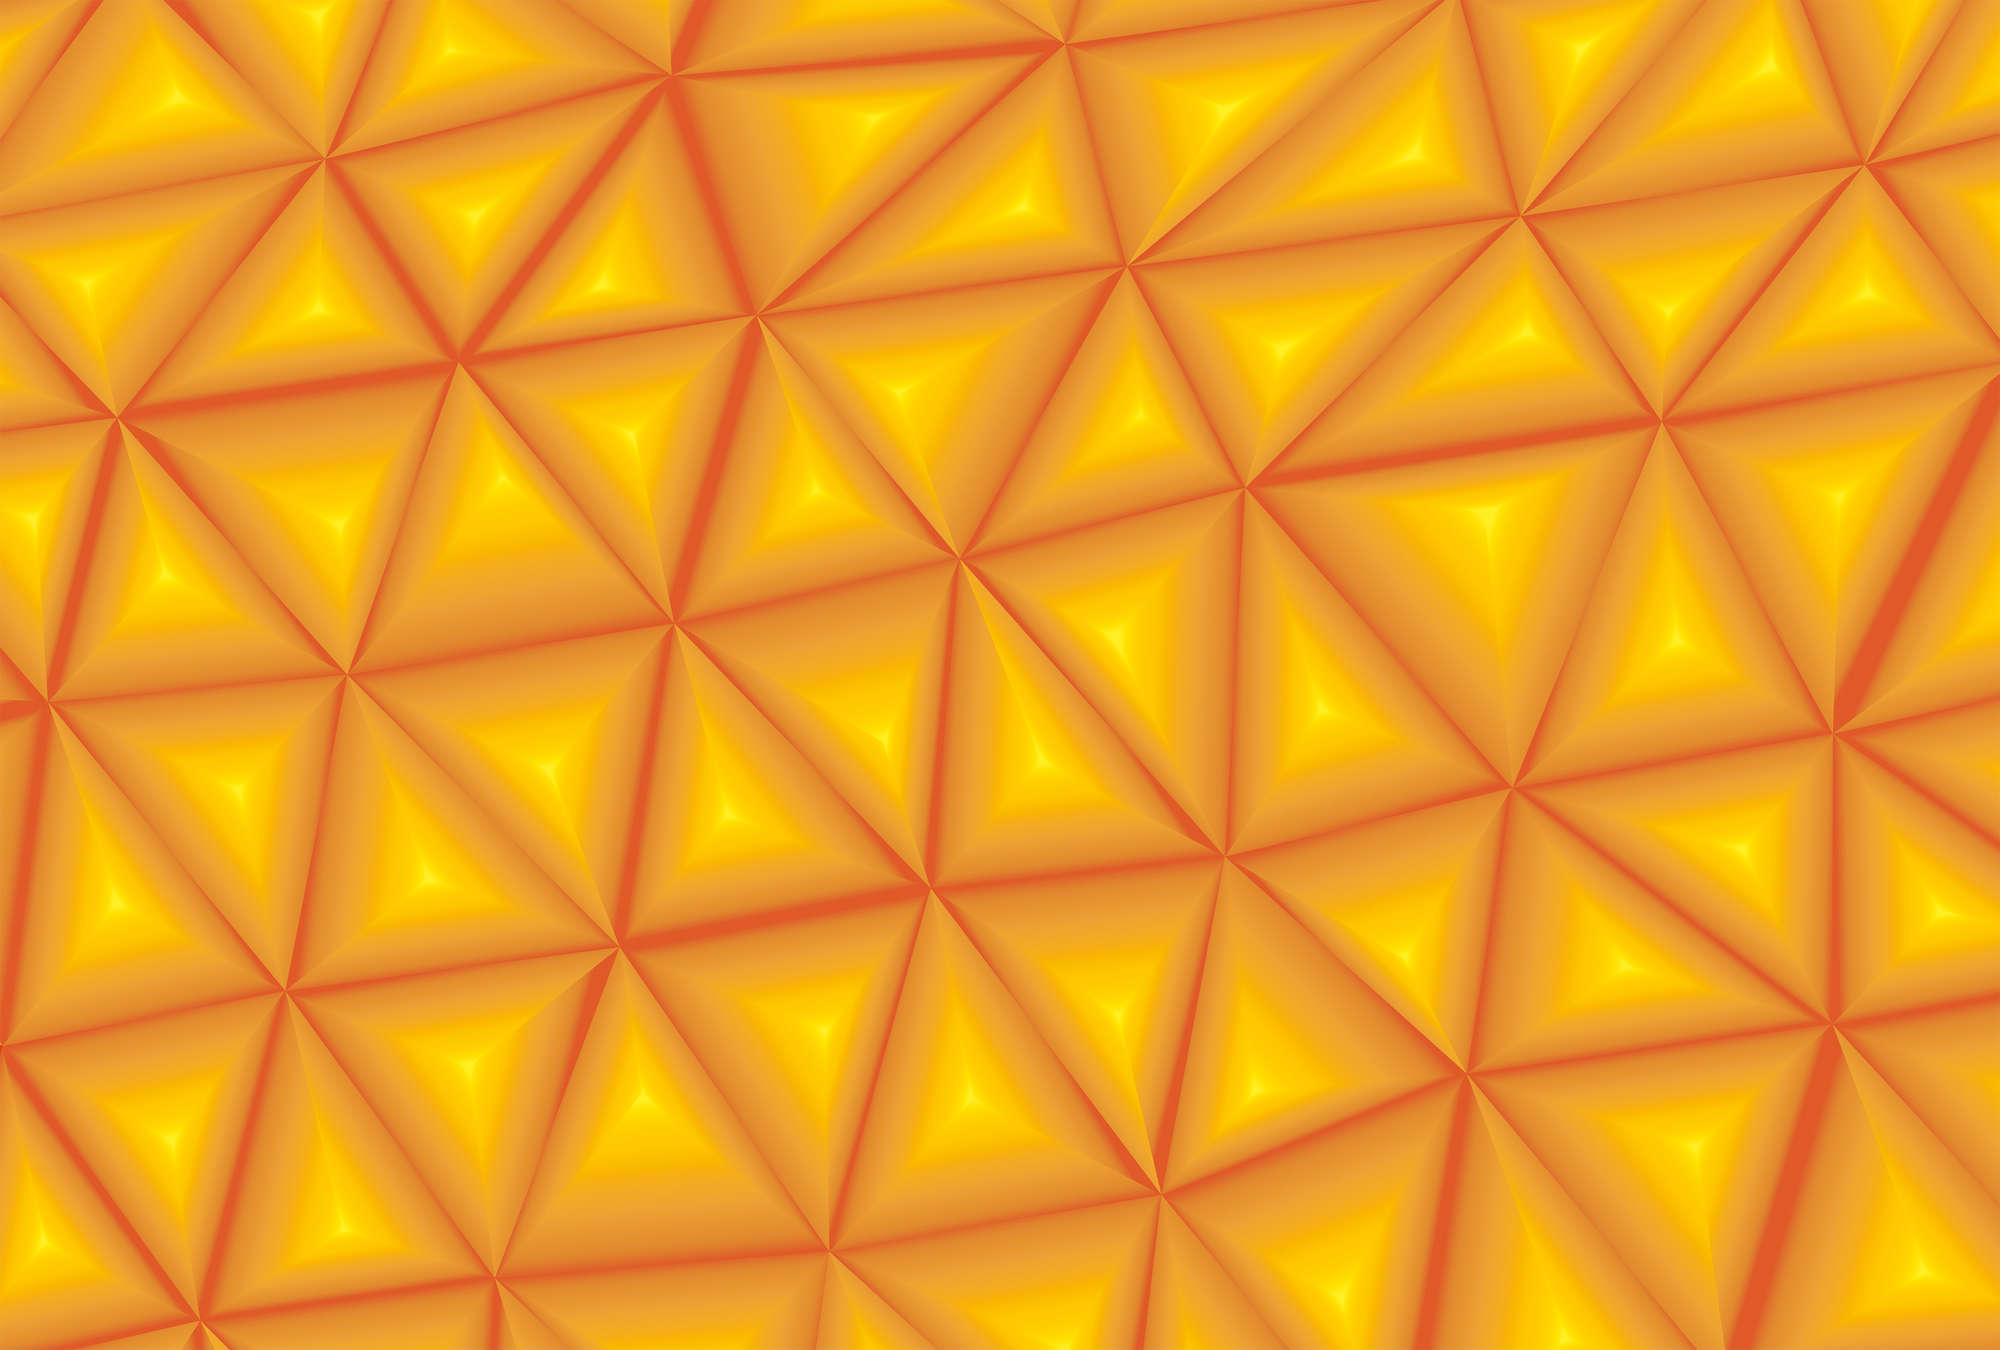             3D Fototoop Oranje met driehoekige facetten
        